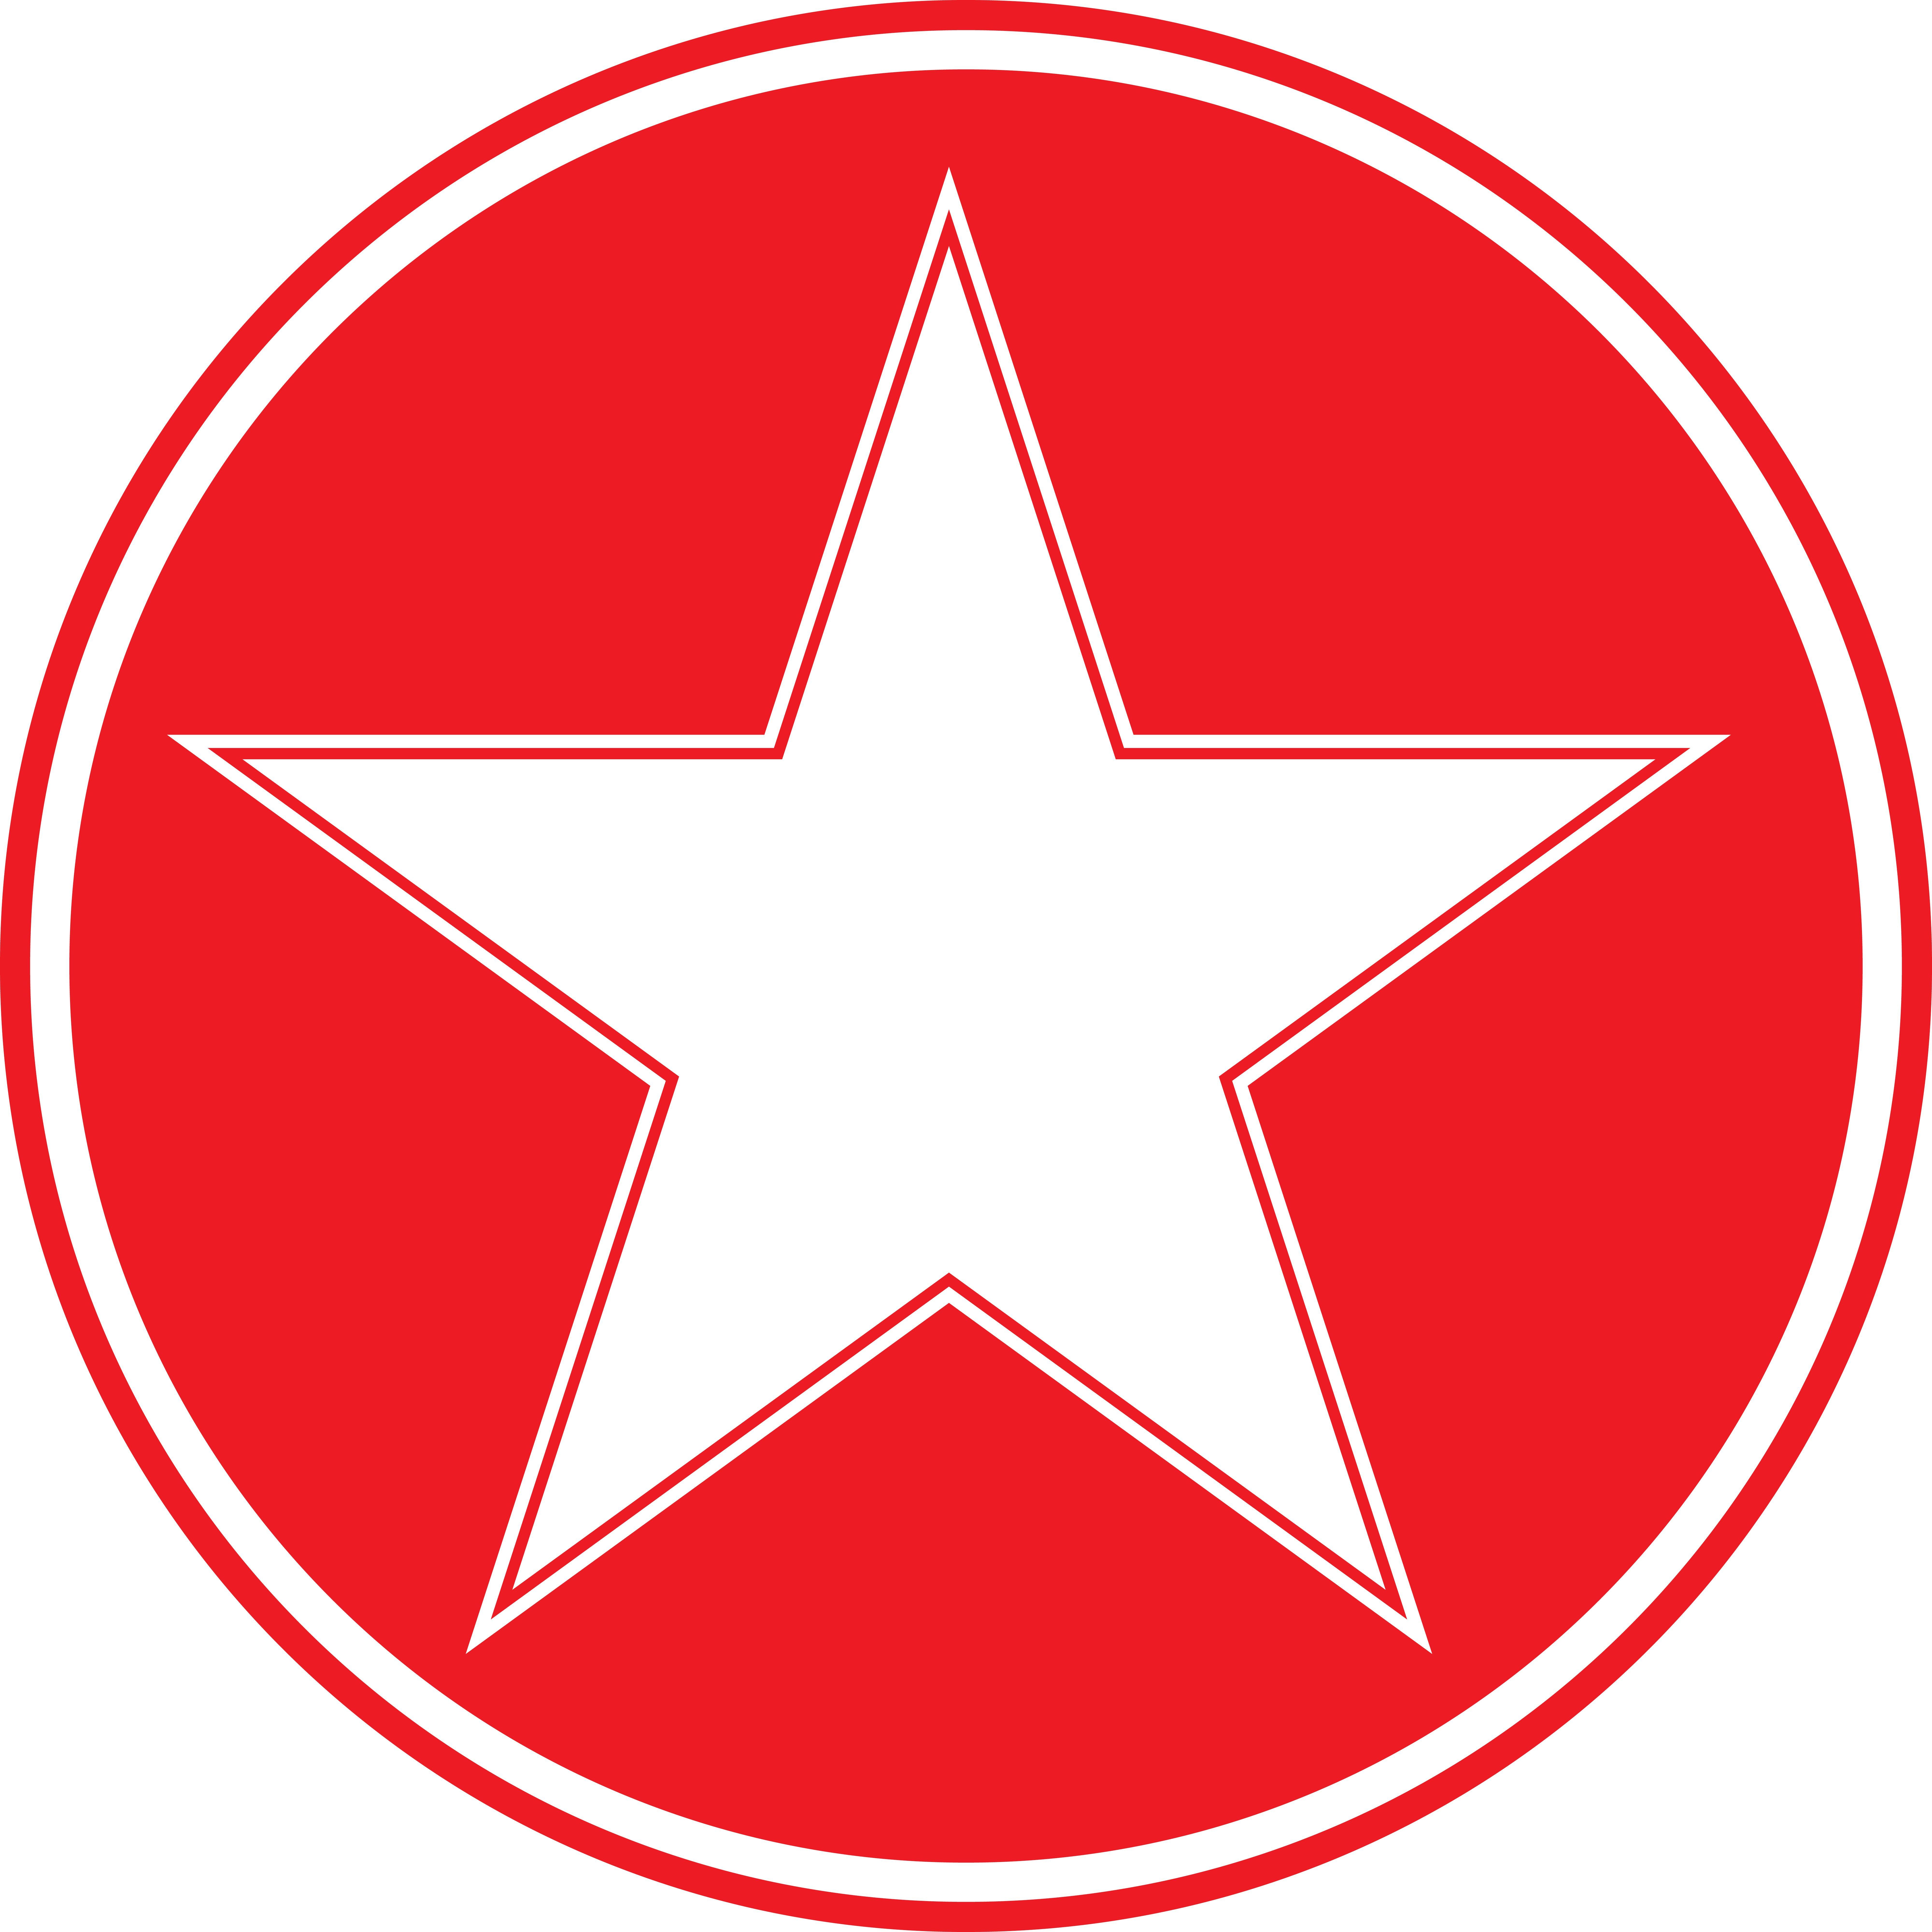 Red White Circle Inside Circle Logo - Star in circle Logos